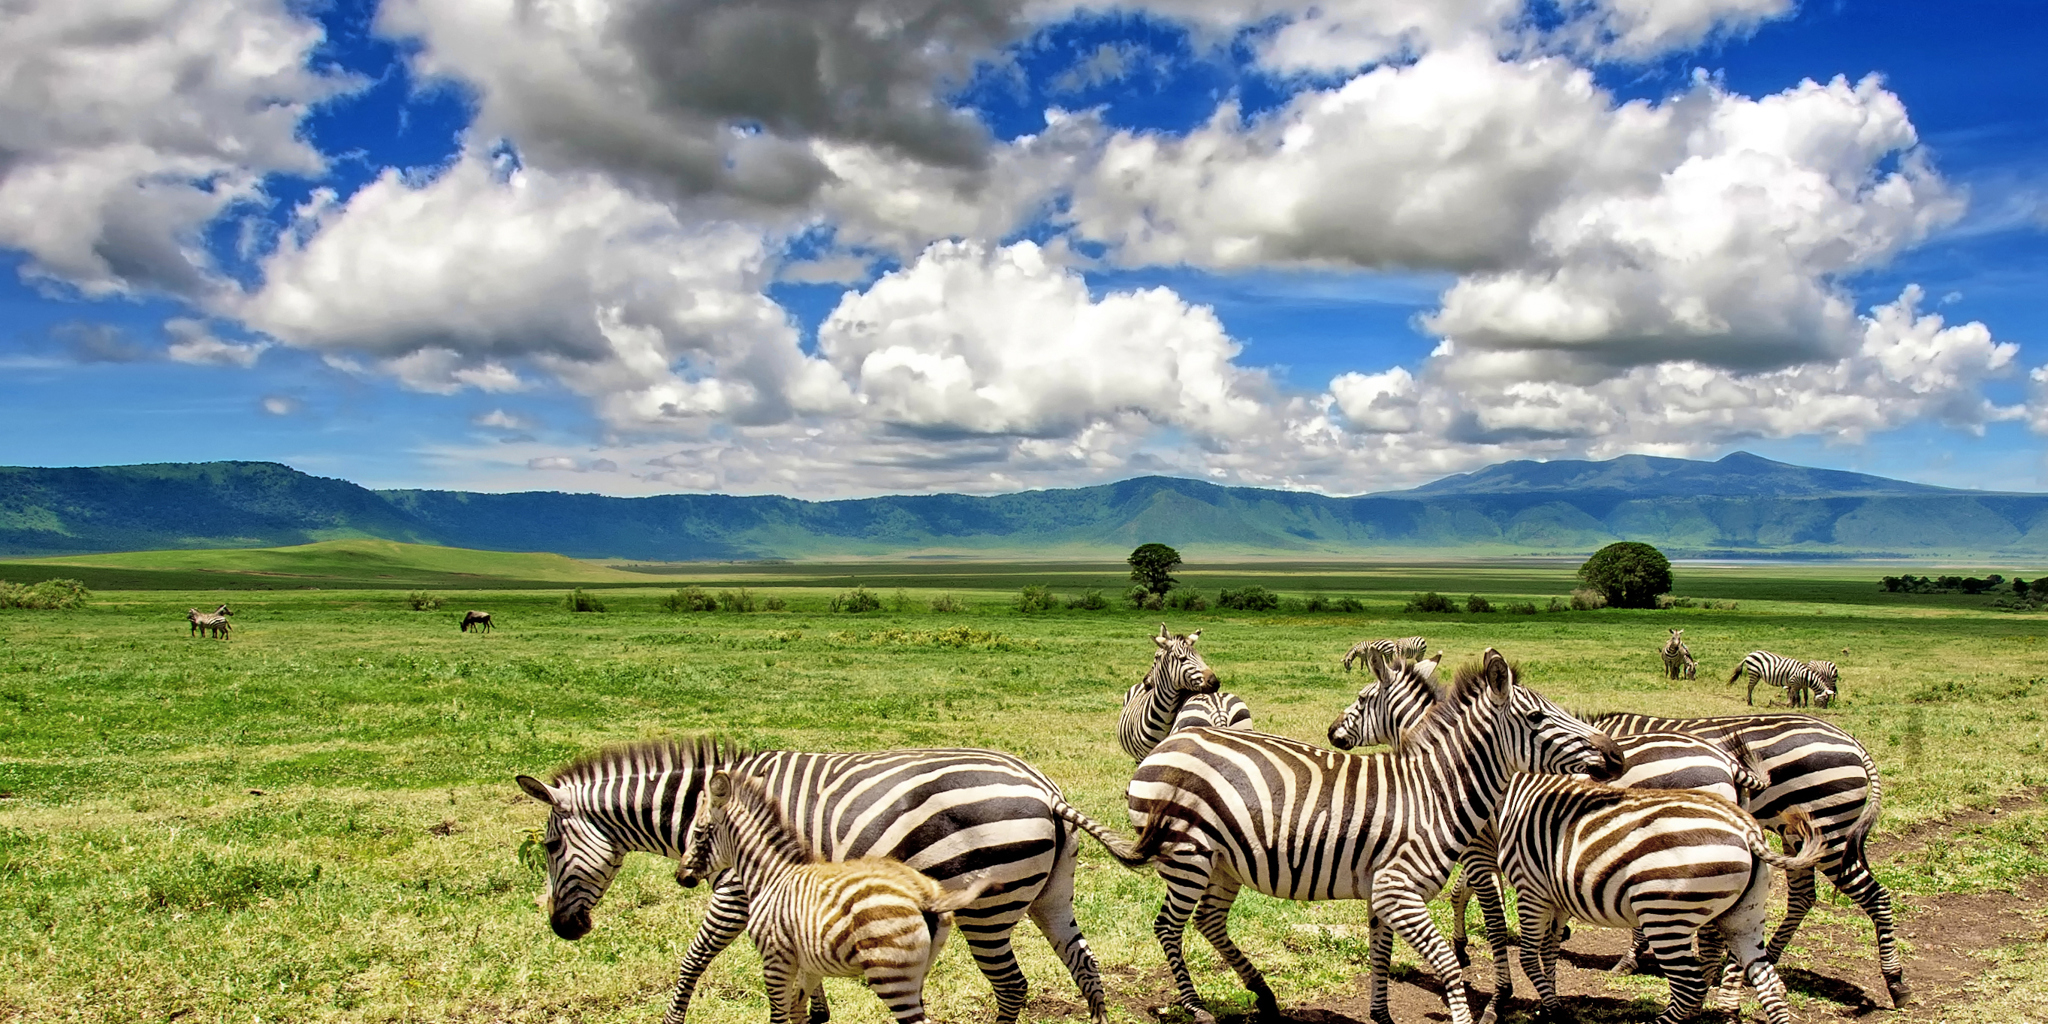 Game drive safaris in Ngorongoro Crater, Tanzania